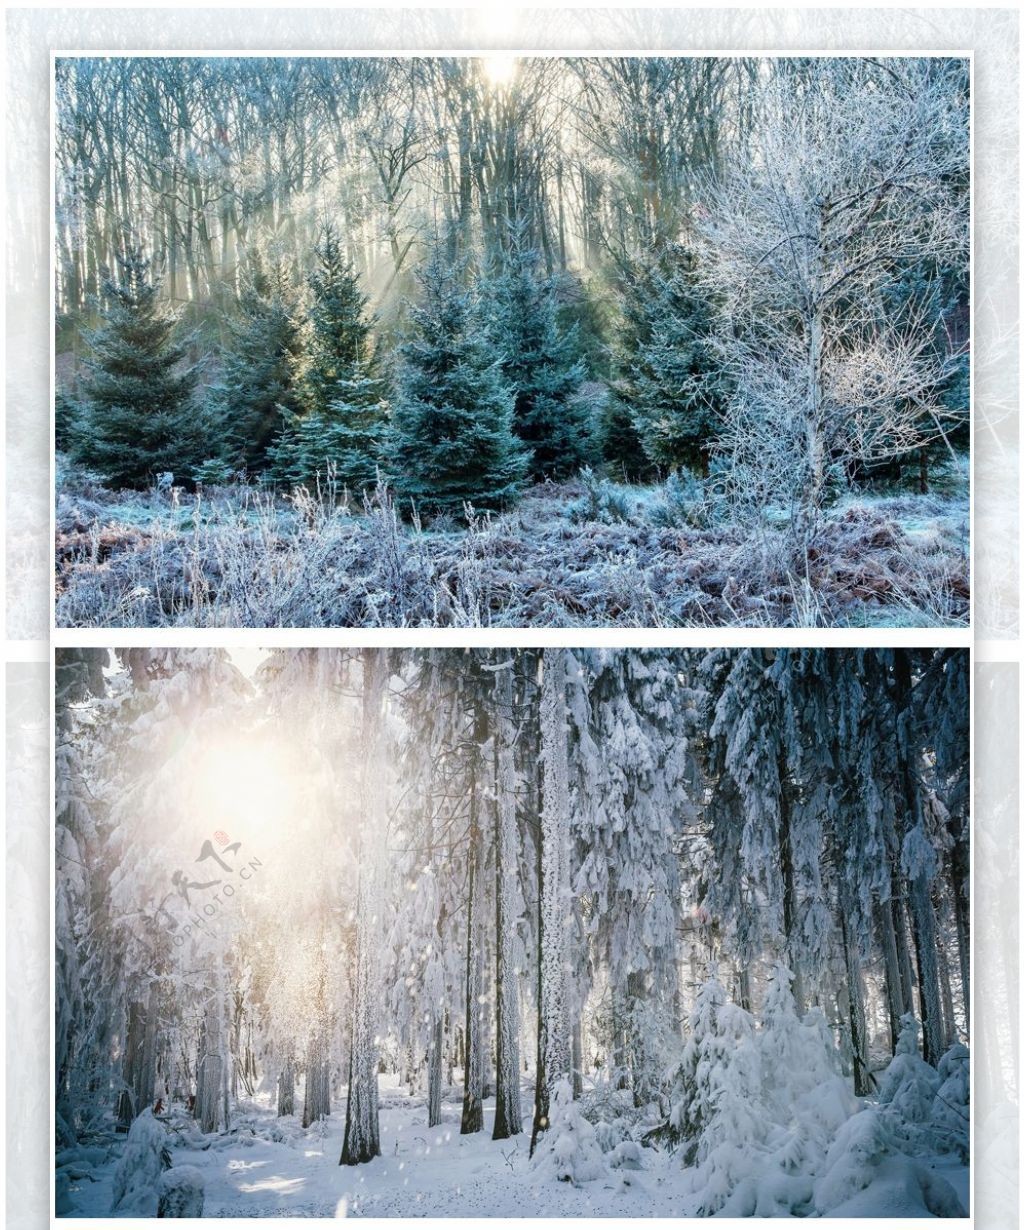 冬天的森林